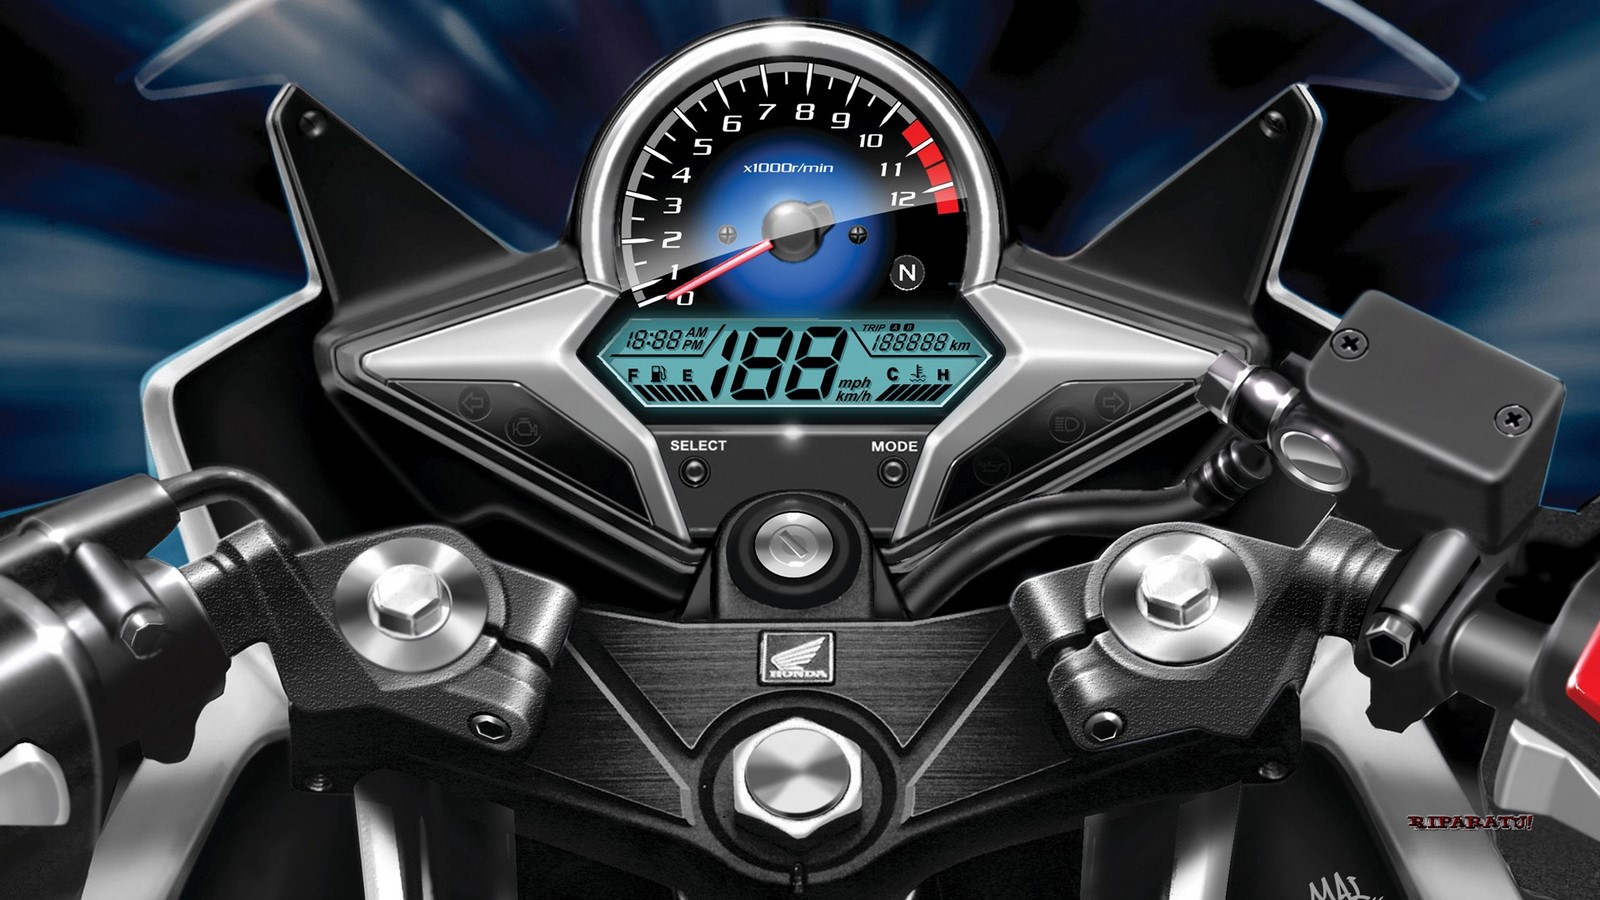 Honda rebel 2021 модельного года – возможно, самый крутой мотоцикл для начинающих